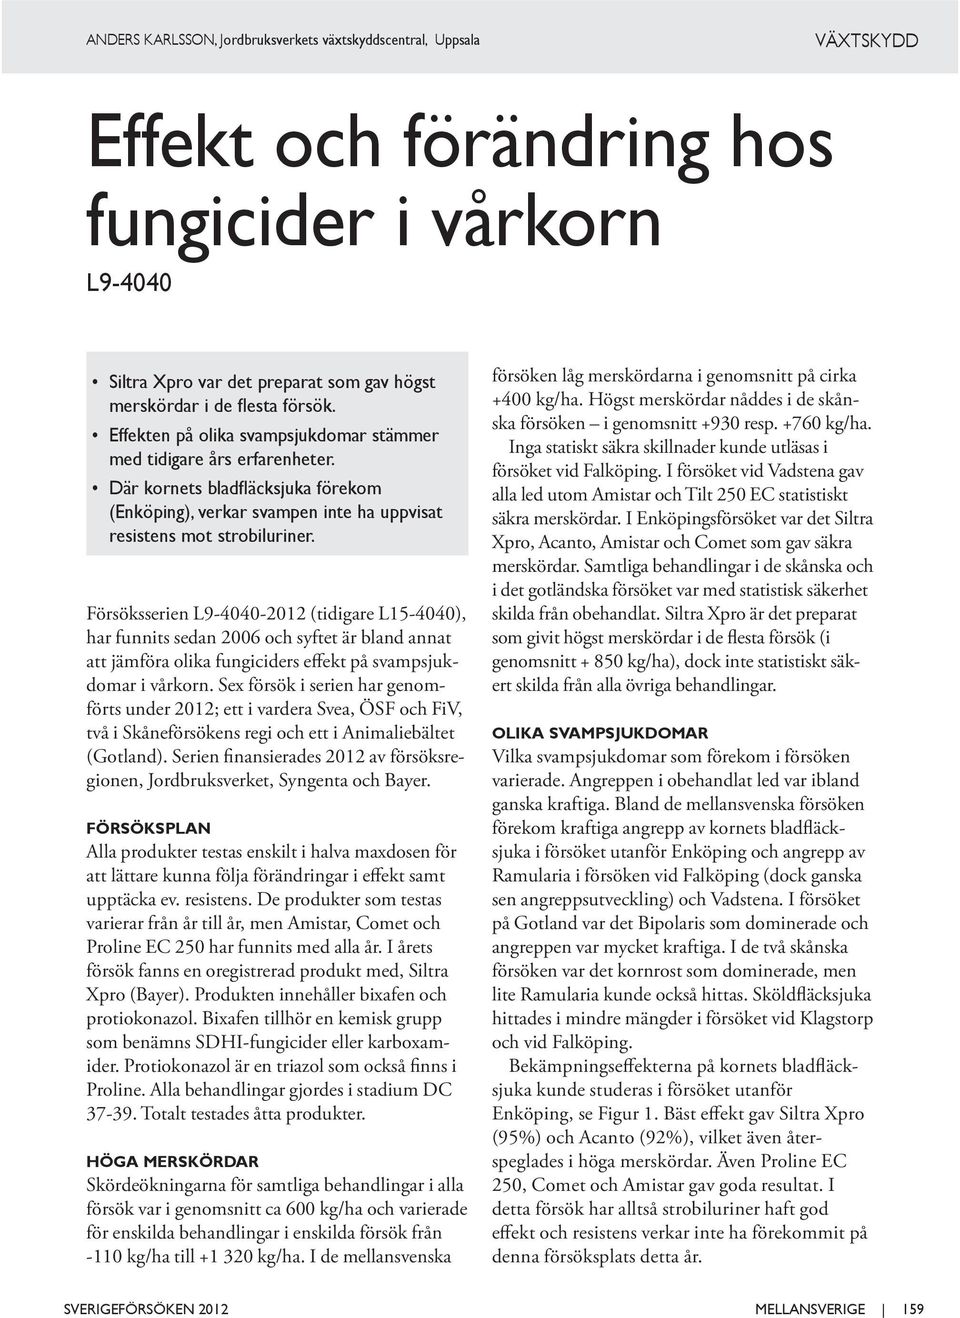 Försöksserien L9-4040-2012 (tidigare L15-4040), har funnits sedan 2006 och syftet är bland annat att jämföra olika fungiciders effekt på svampsjukdomar i vårkorn.